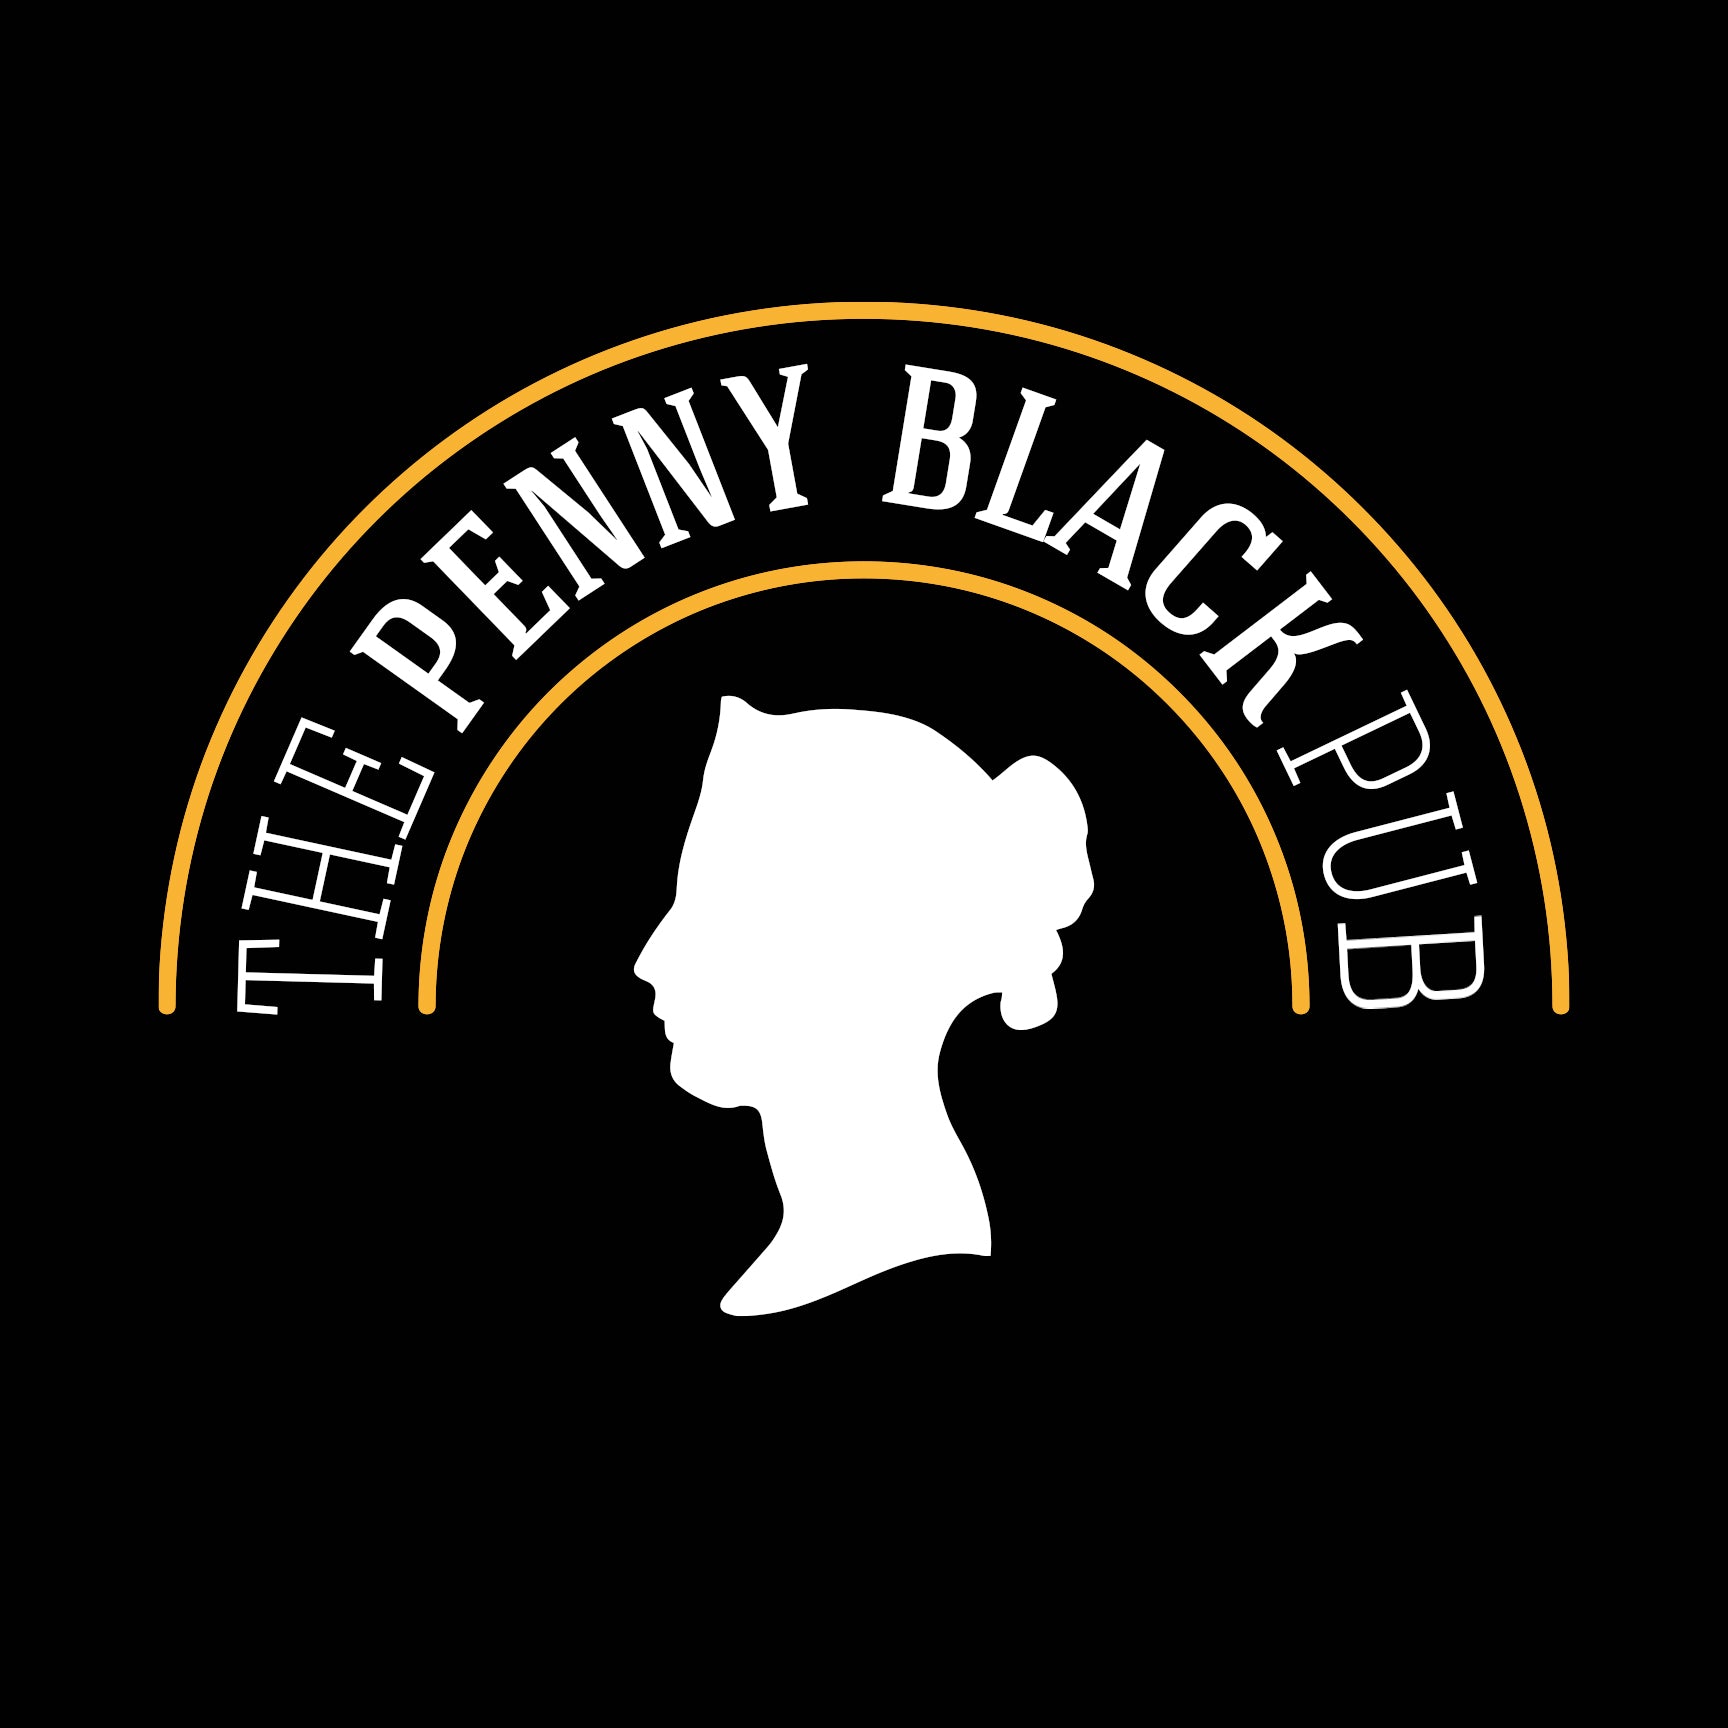 Penny Black PUB